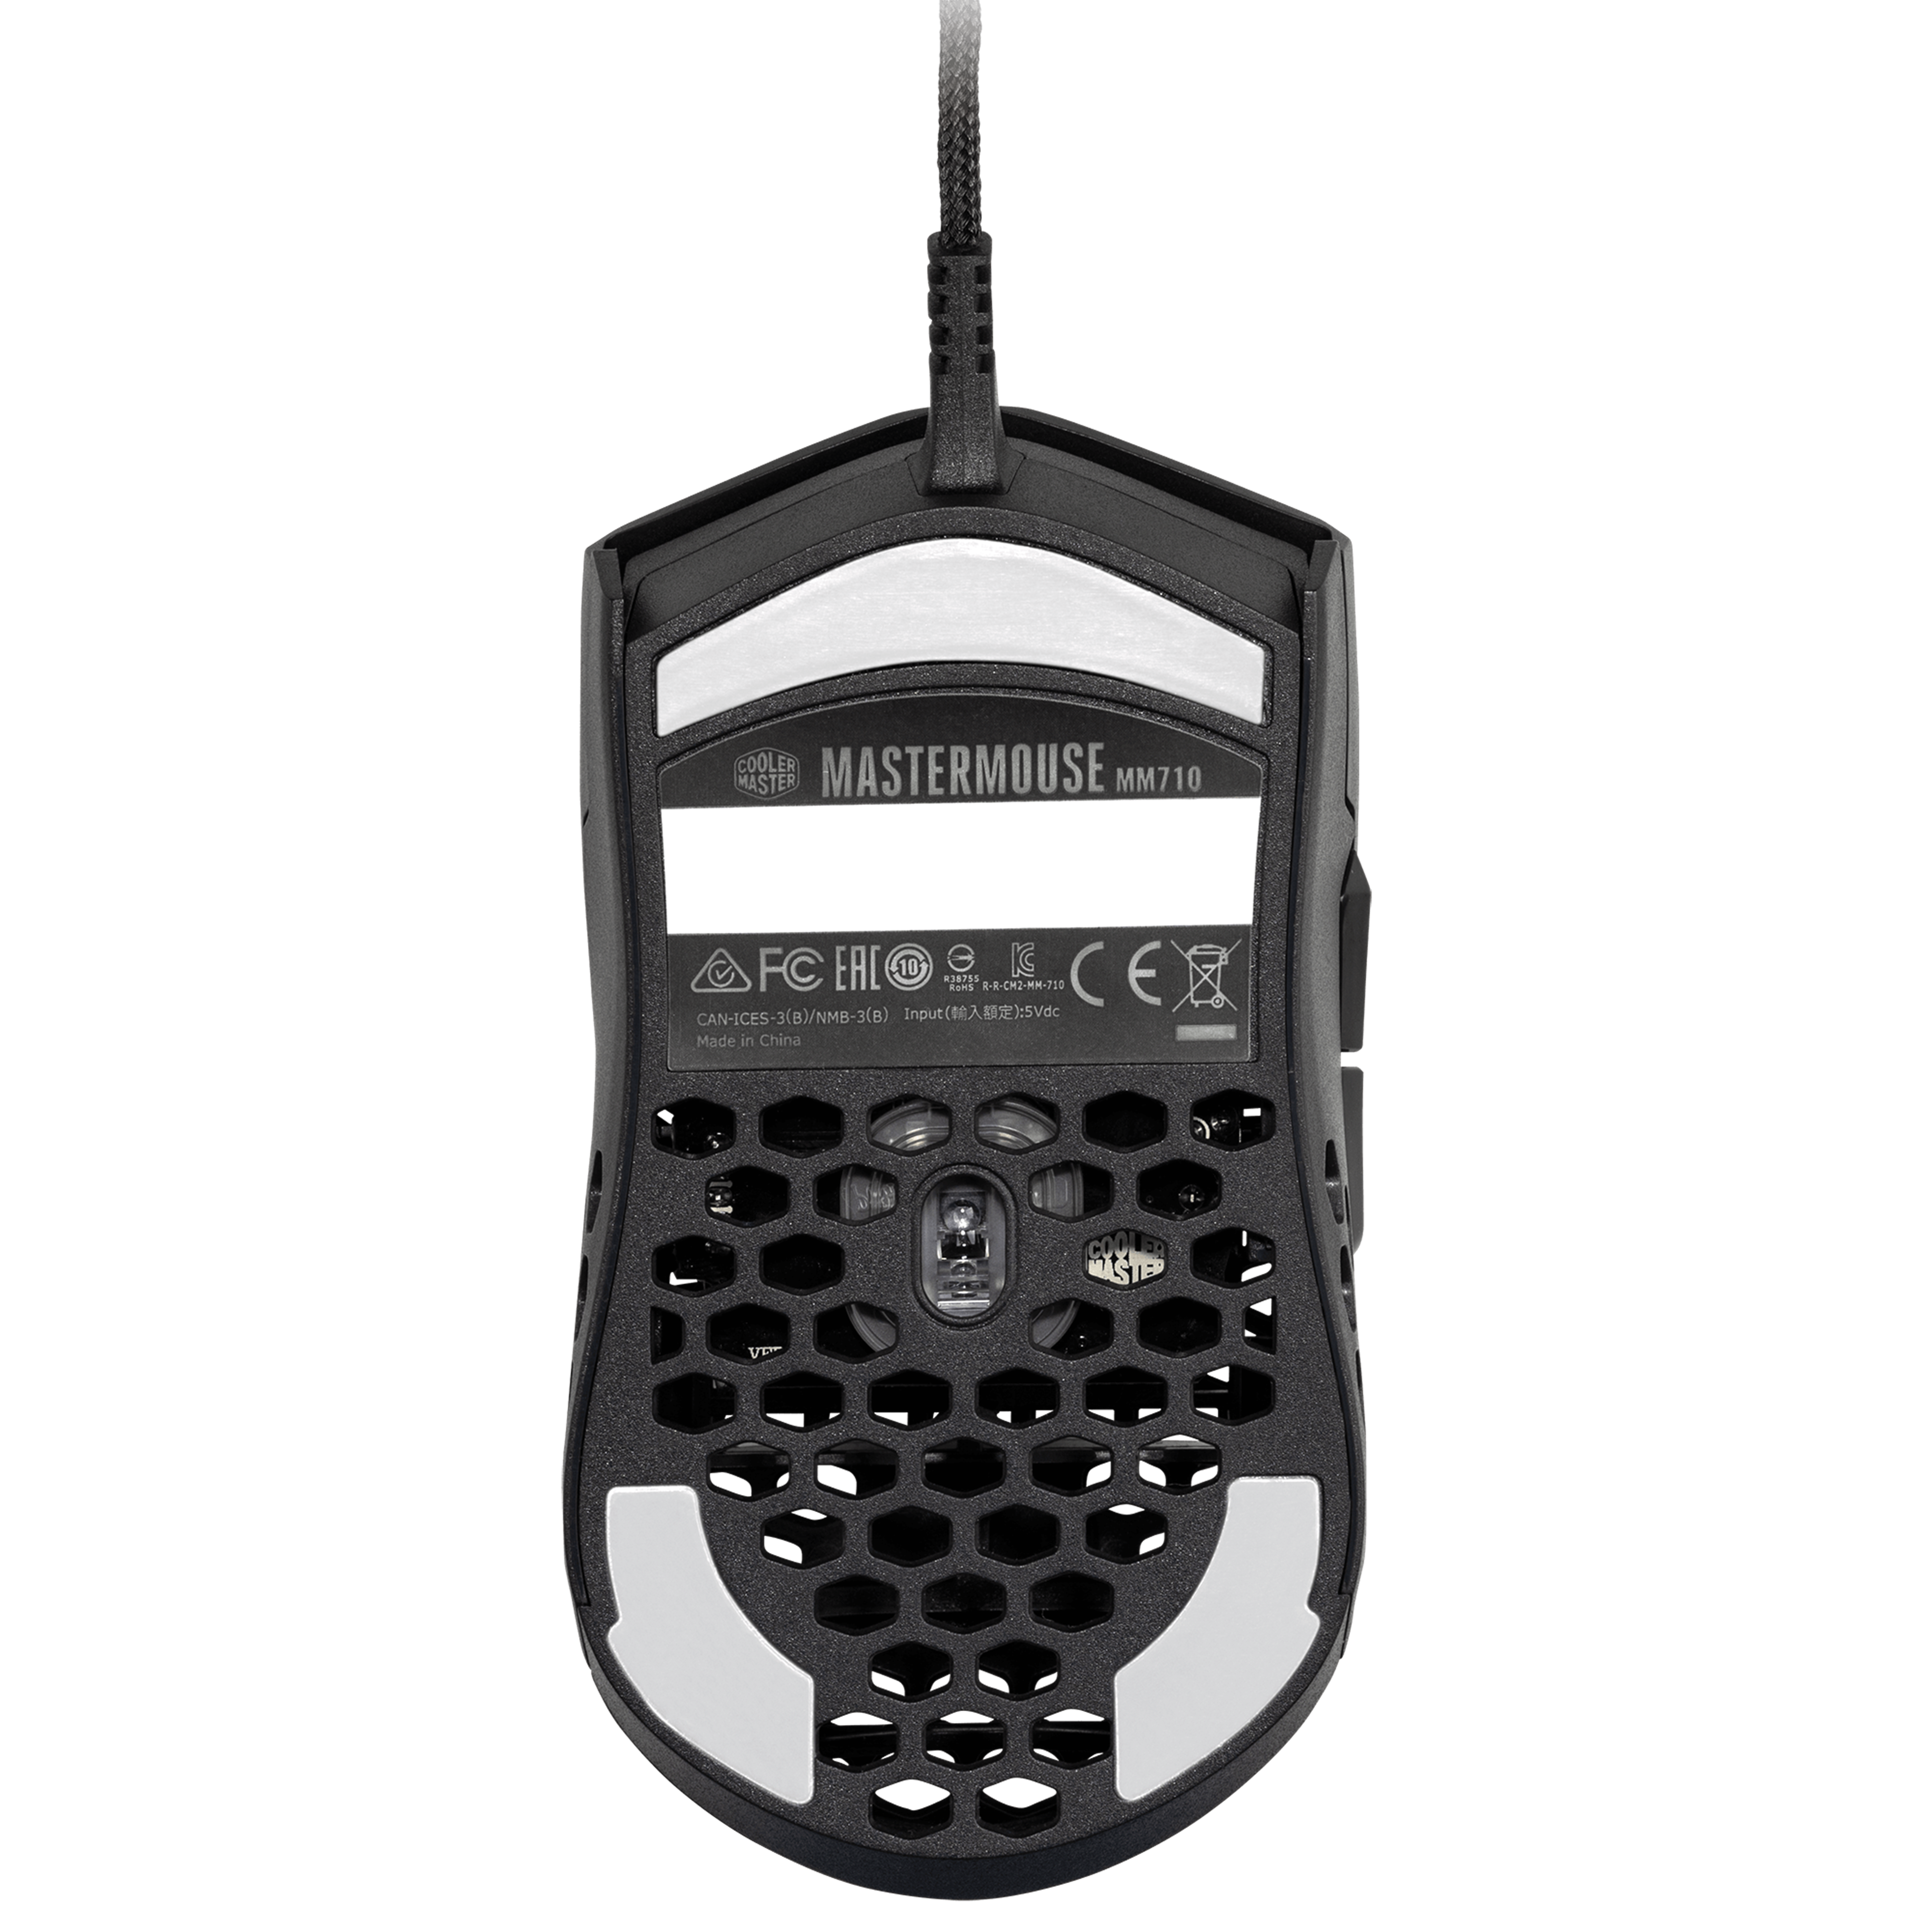 PTFE-Gleitfüße beidhändig optischer Sensor 16000 DPI Cooler Master MM710 ultraleichte 53-g-Gaming-Maus mit Kabel und Wabenschale Matt-Weiß 20 Millionen Klick-Omron-Schalter 